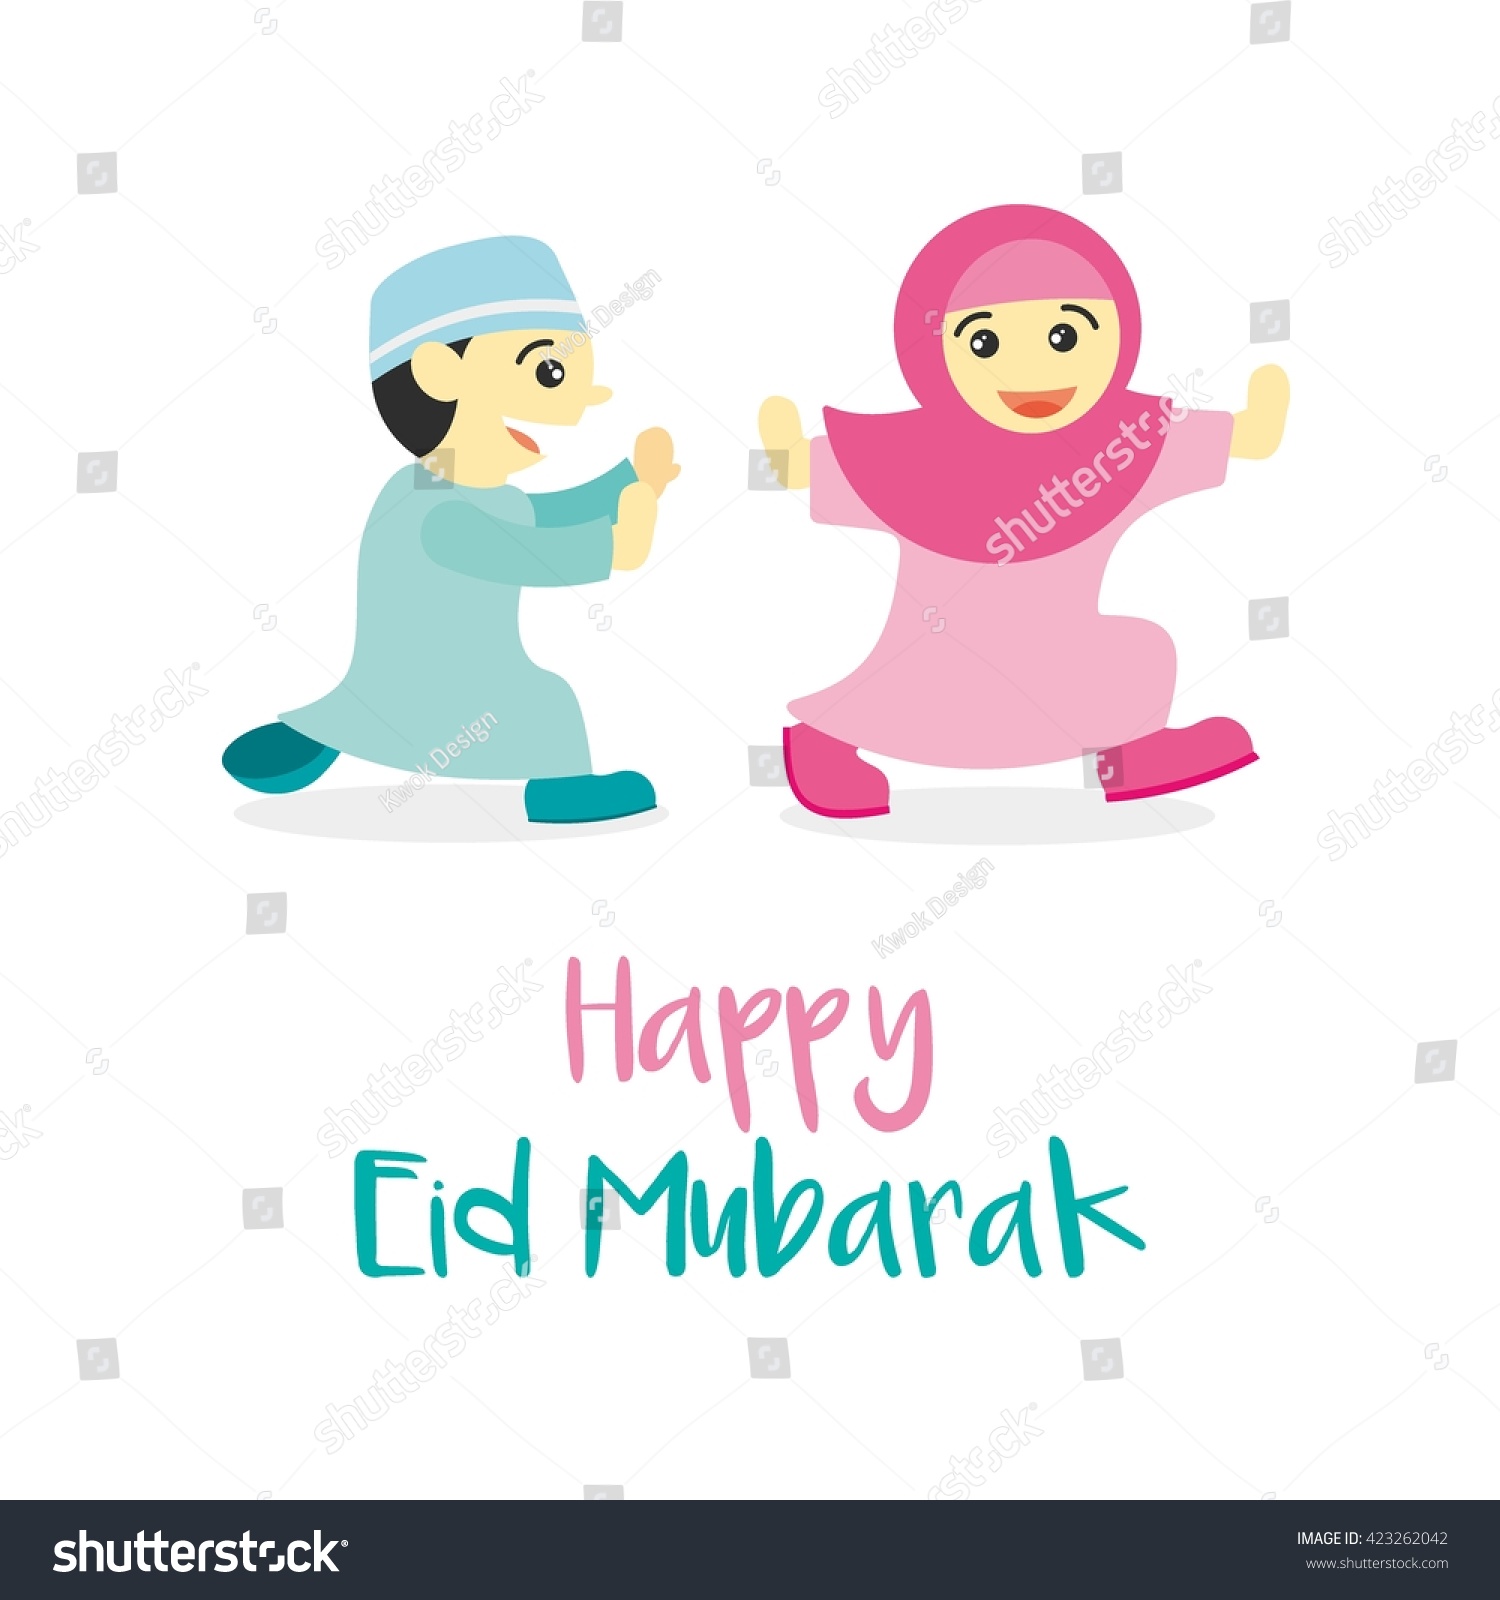 Muslim community festival Eid